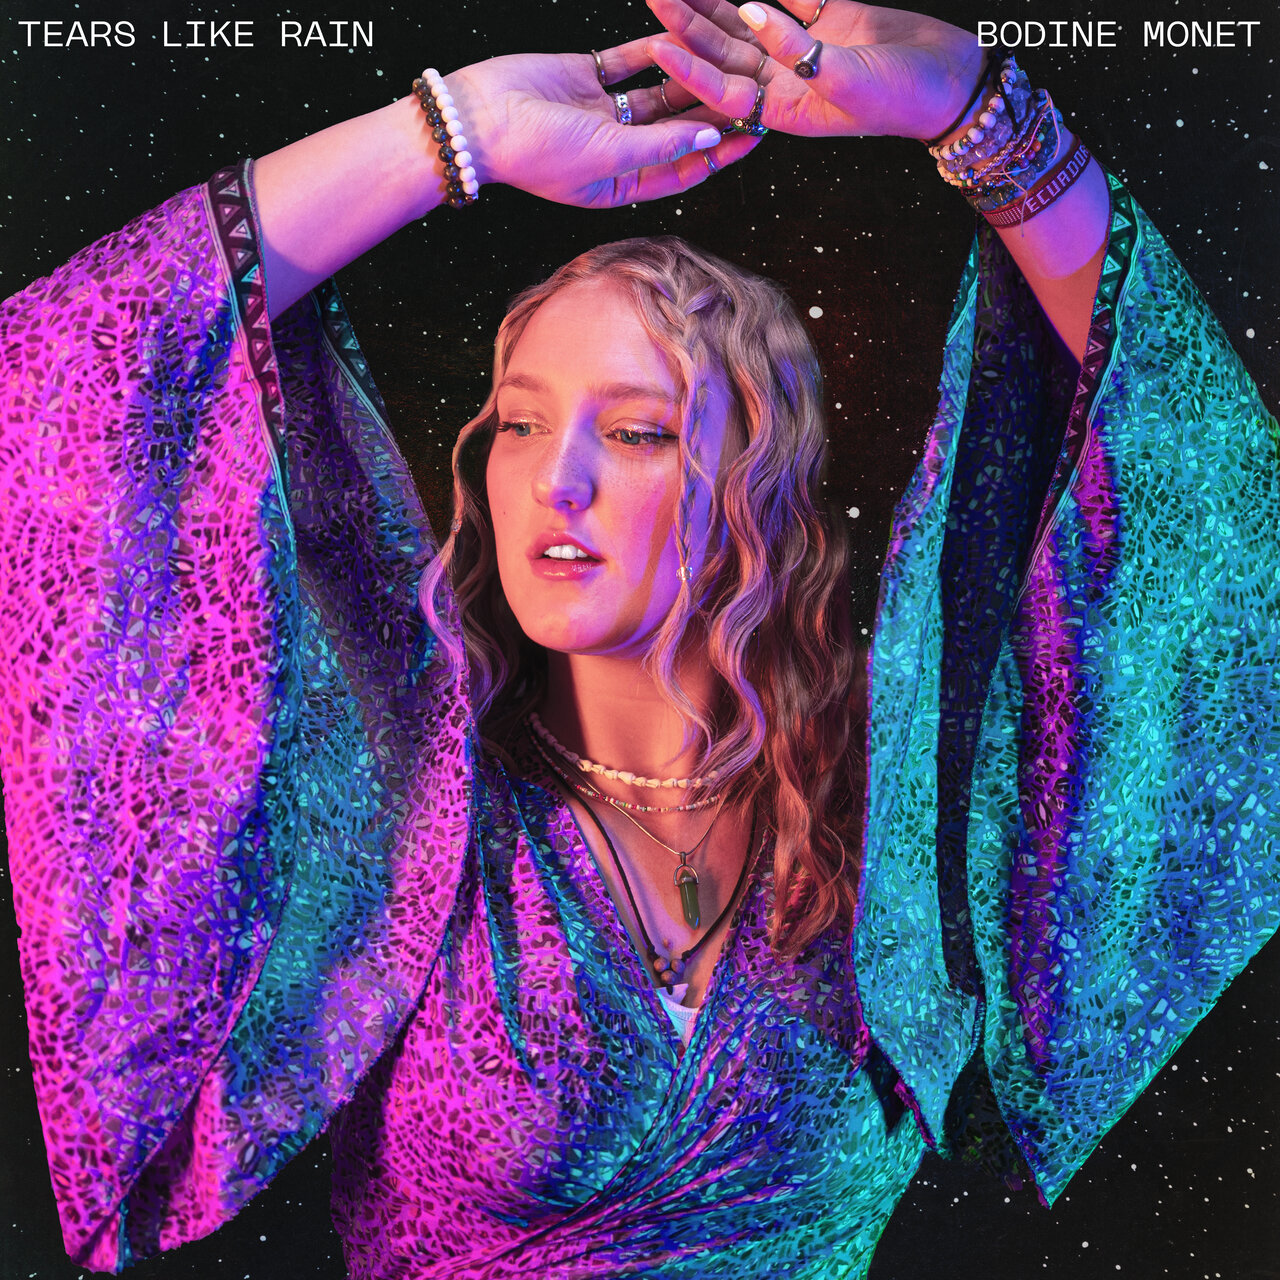 Bodine Monet — Tears Like Rain cover artwork